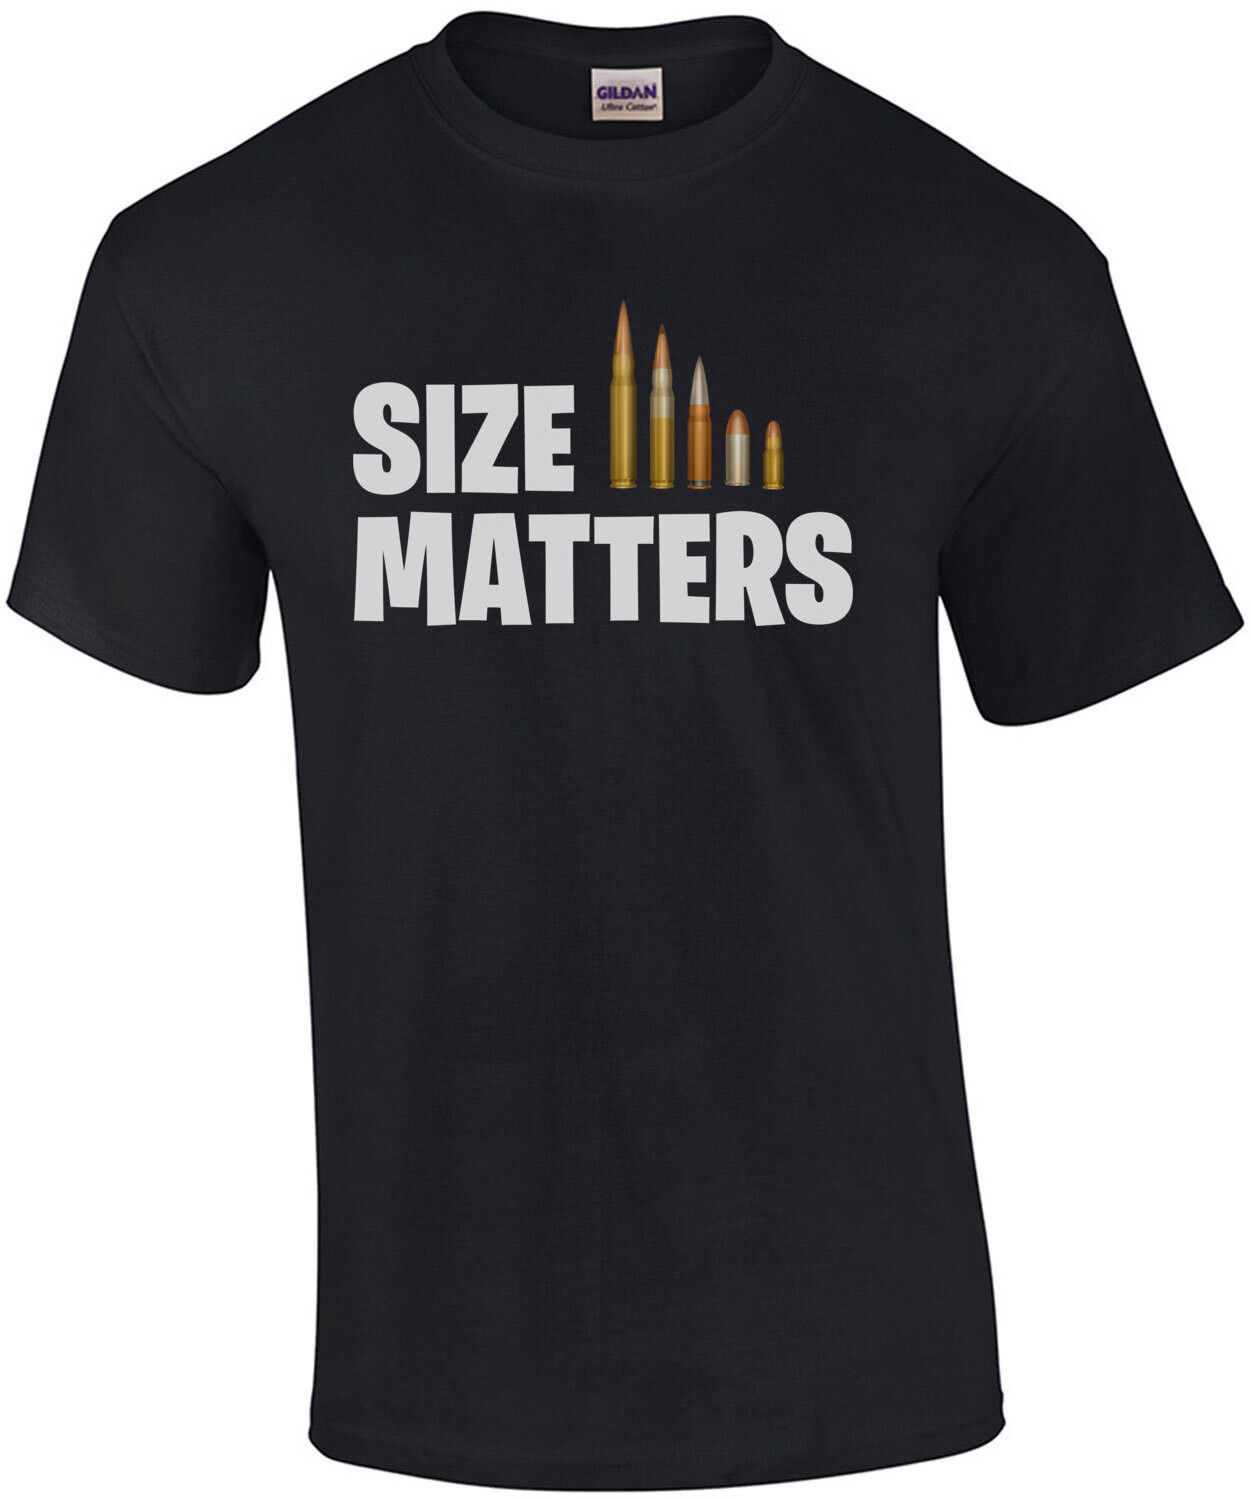 Size Matters - Gun T-Shirt